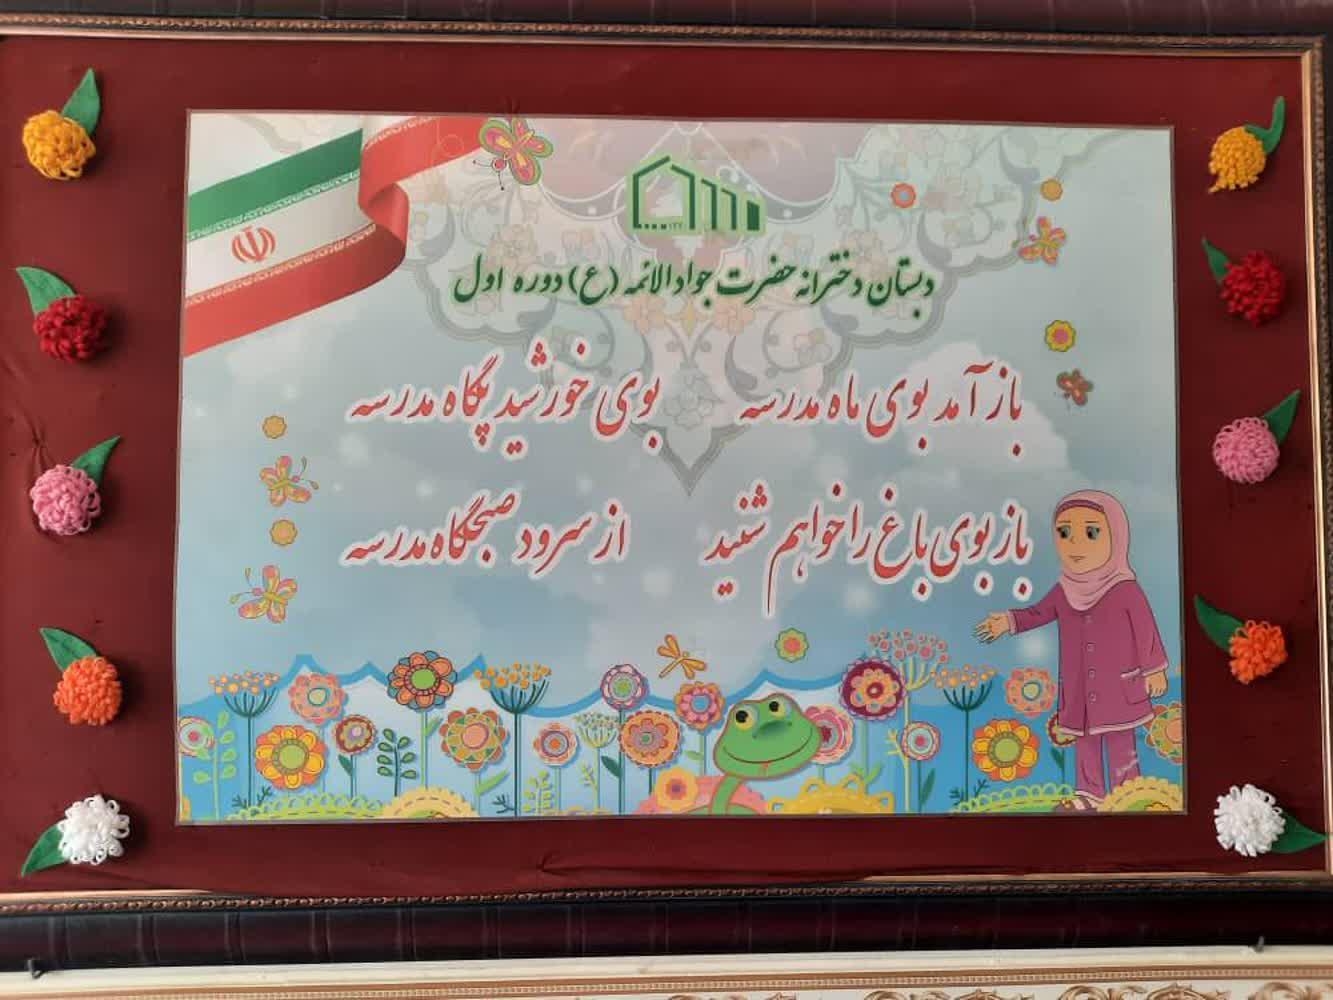 برگزاری جشن غنچه های نوآموزان پیش دبستانی بوستان حضرت جوادالائمه (ع) در محیط امن و شاد دبستان دخترانه دوره اول